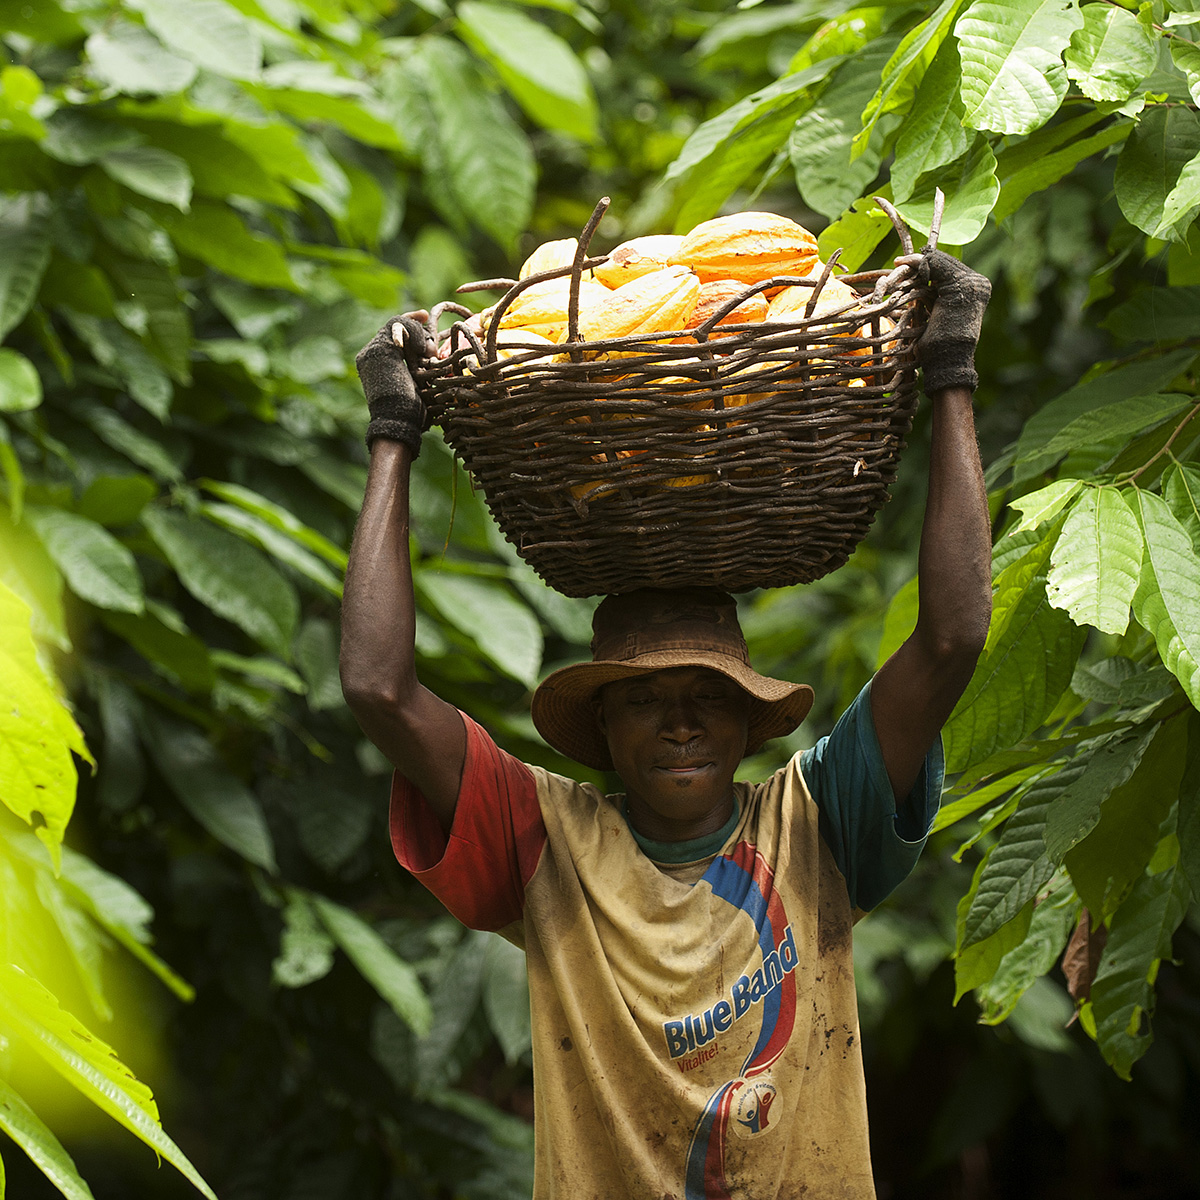 Suurin osa kuluttamastamme kaakaosta tulee Länsi-Afrikasta. Kaakaon pienviljelijät ovat hyvin köyhiä. Reilu kauppa edistää suklaan vastuullista tuotantoa. Kuva: Éric St-Pierre